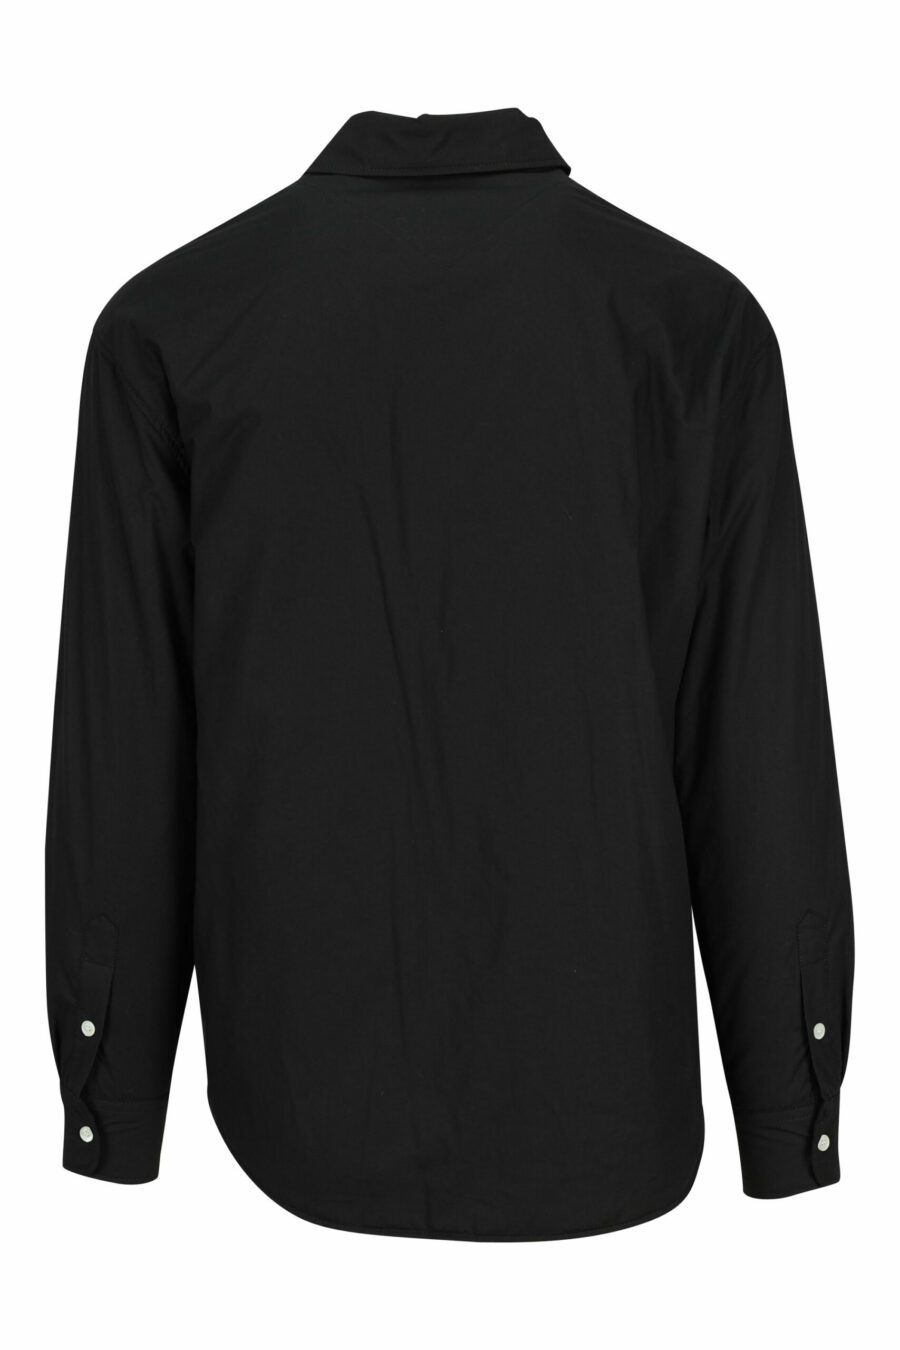 Camisa negra "oversize" con logo "kenzo tag" - 3612230585003 1 scaled